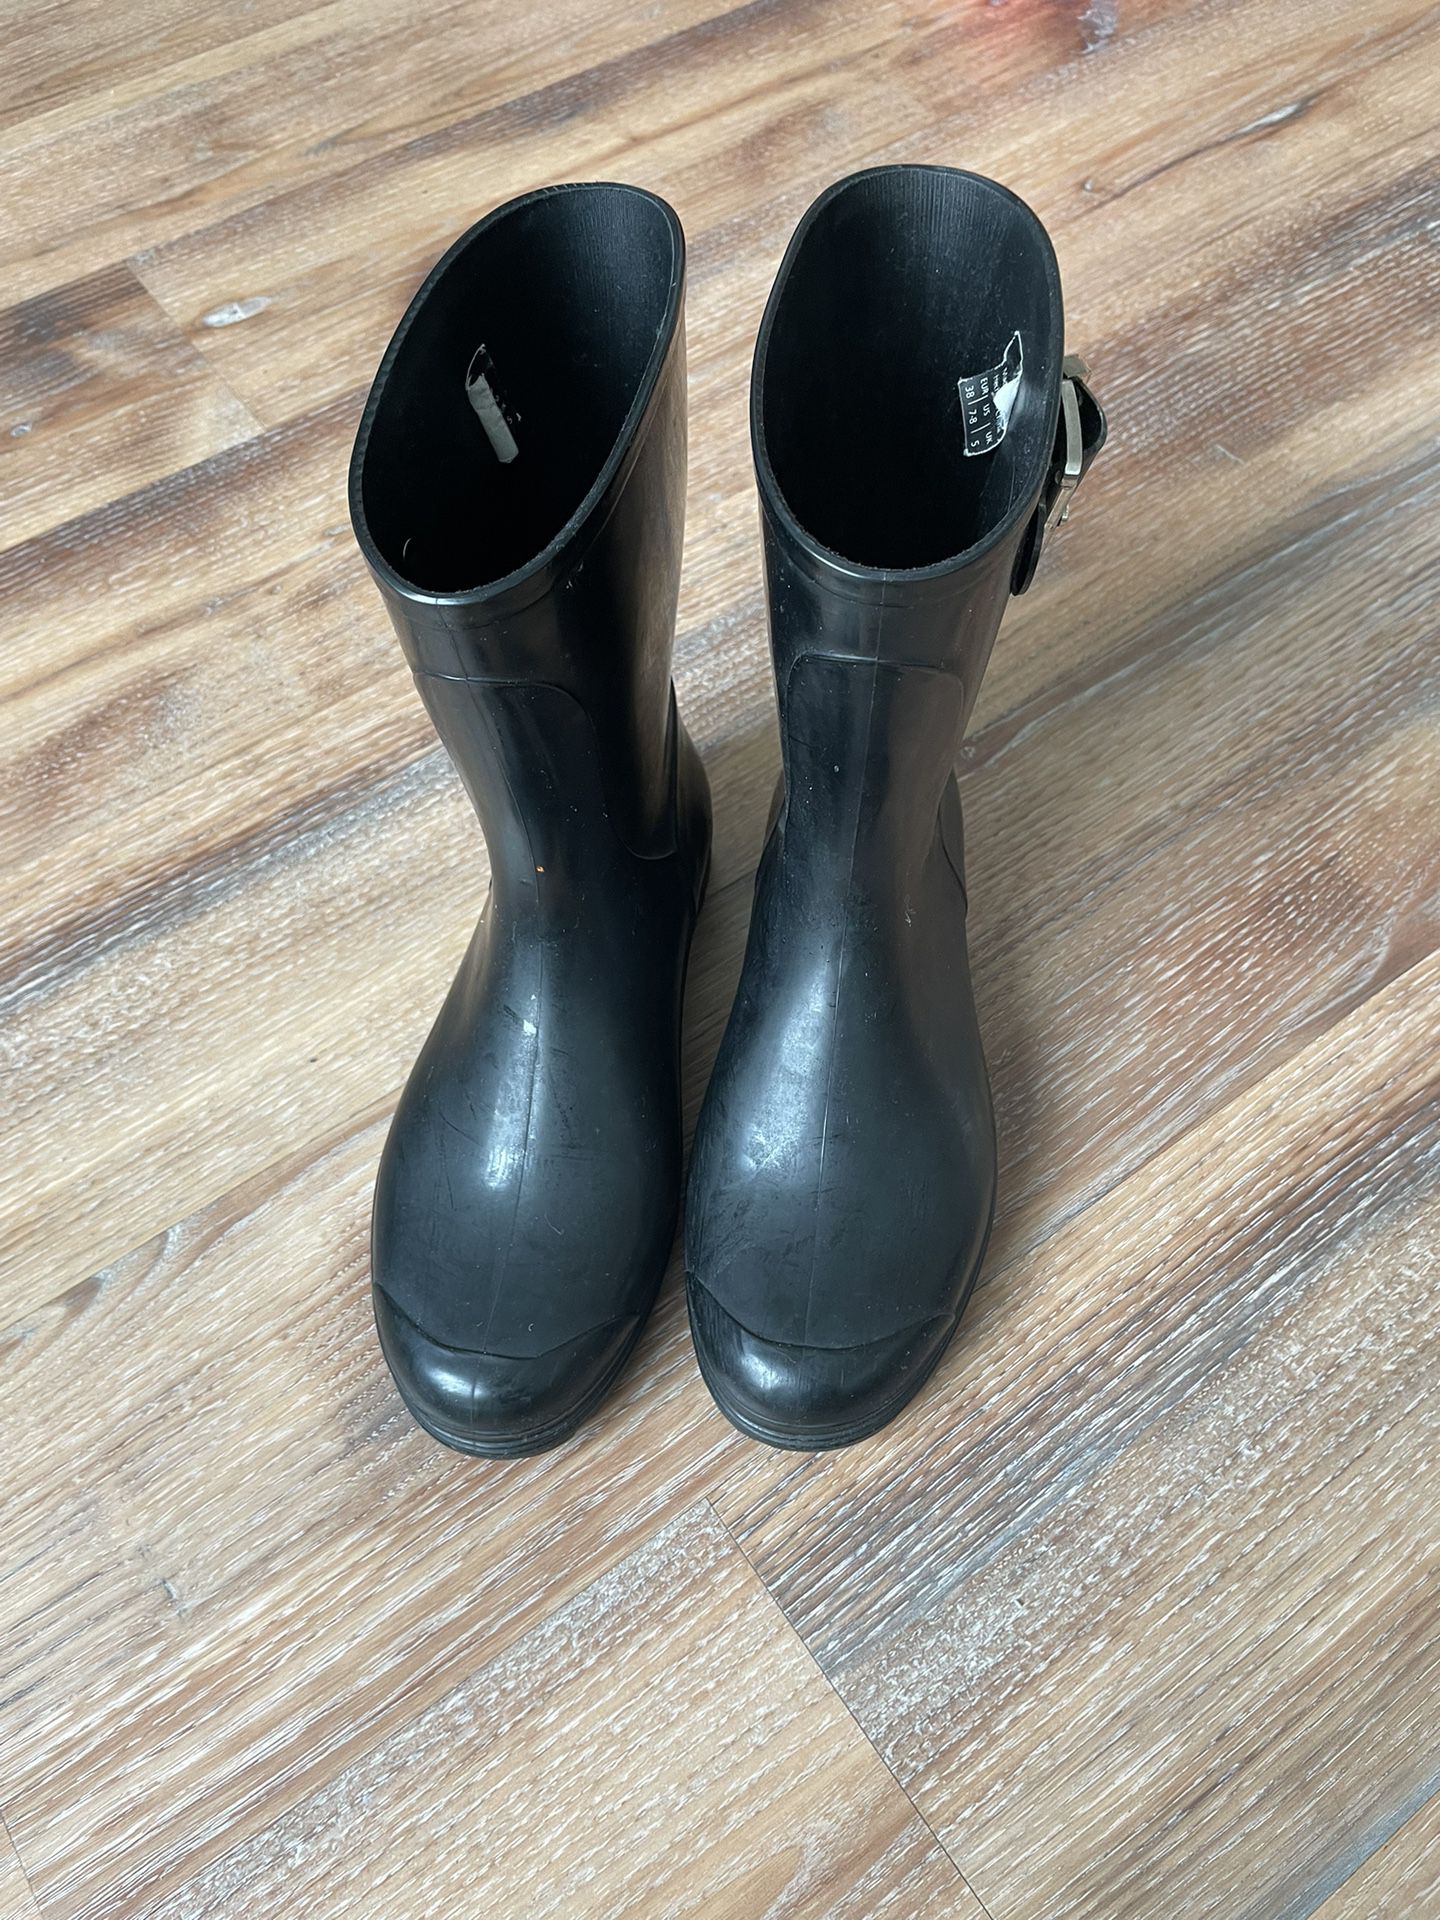 Rain Boots Size 7/8